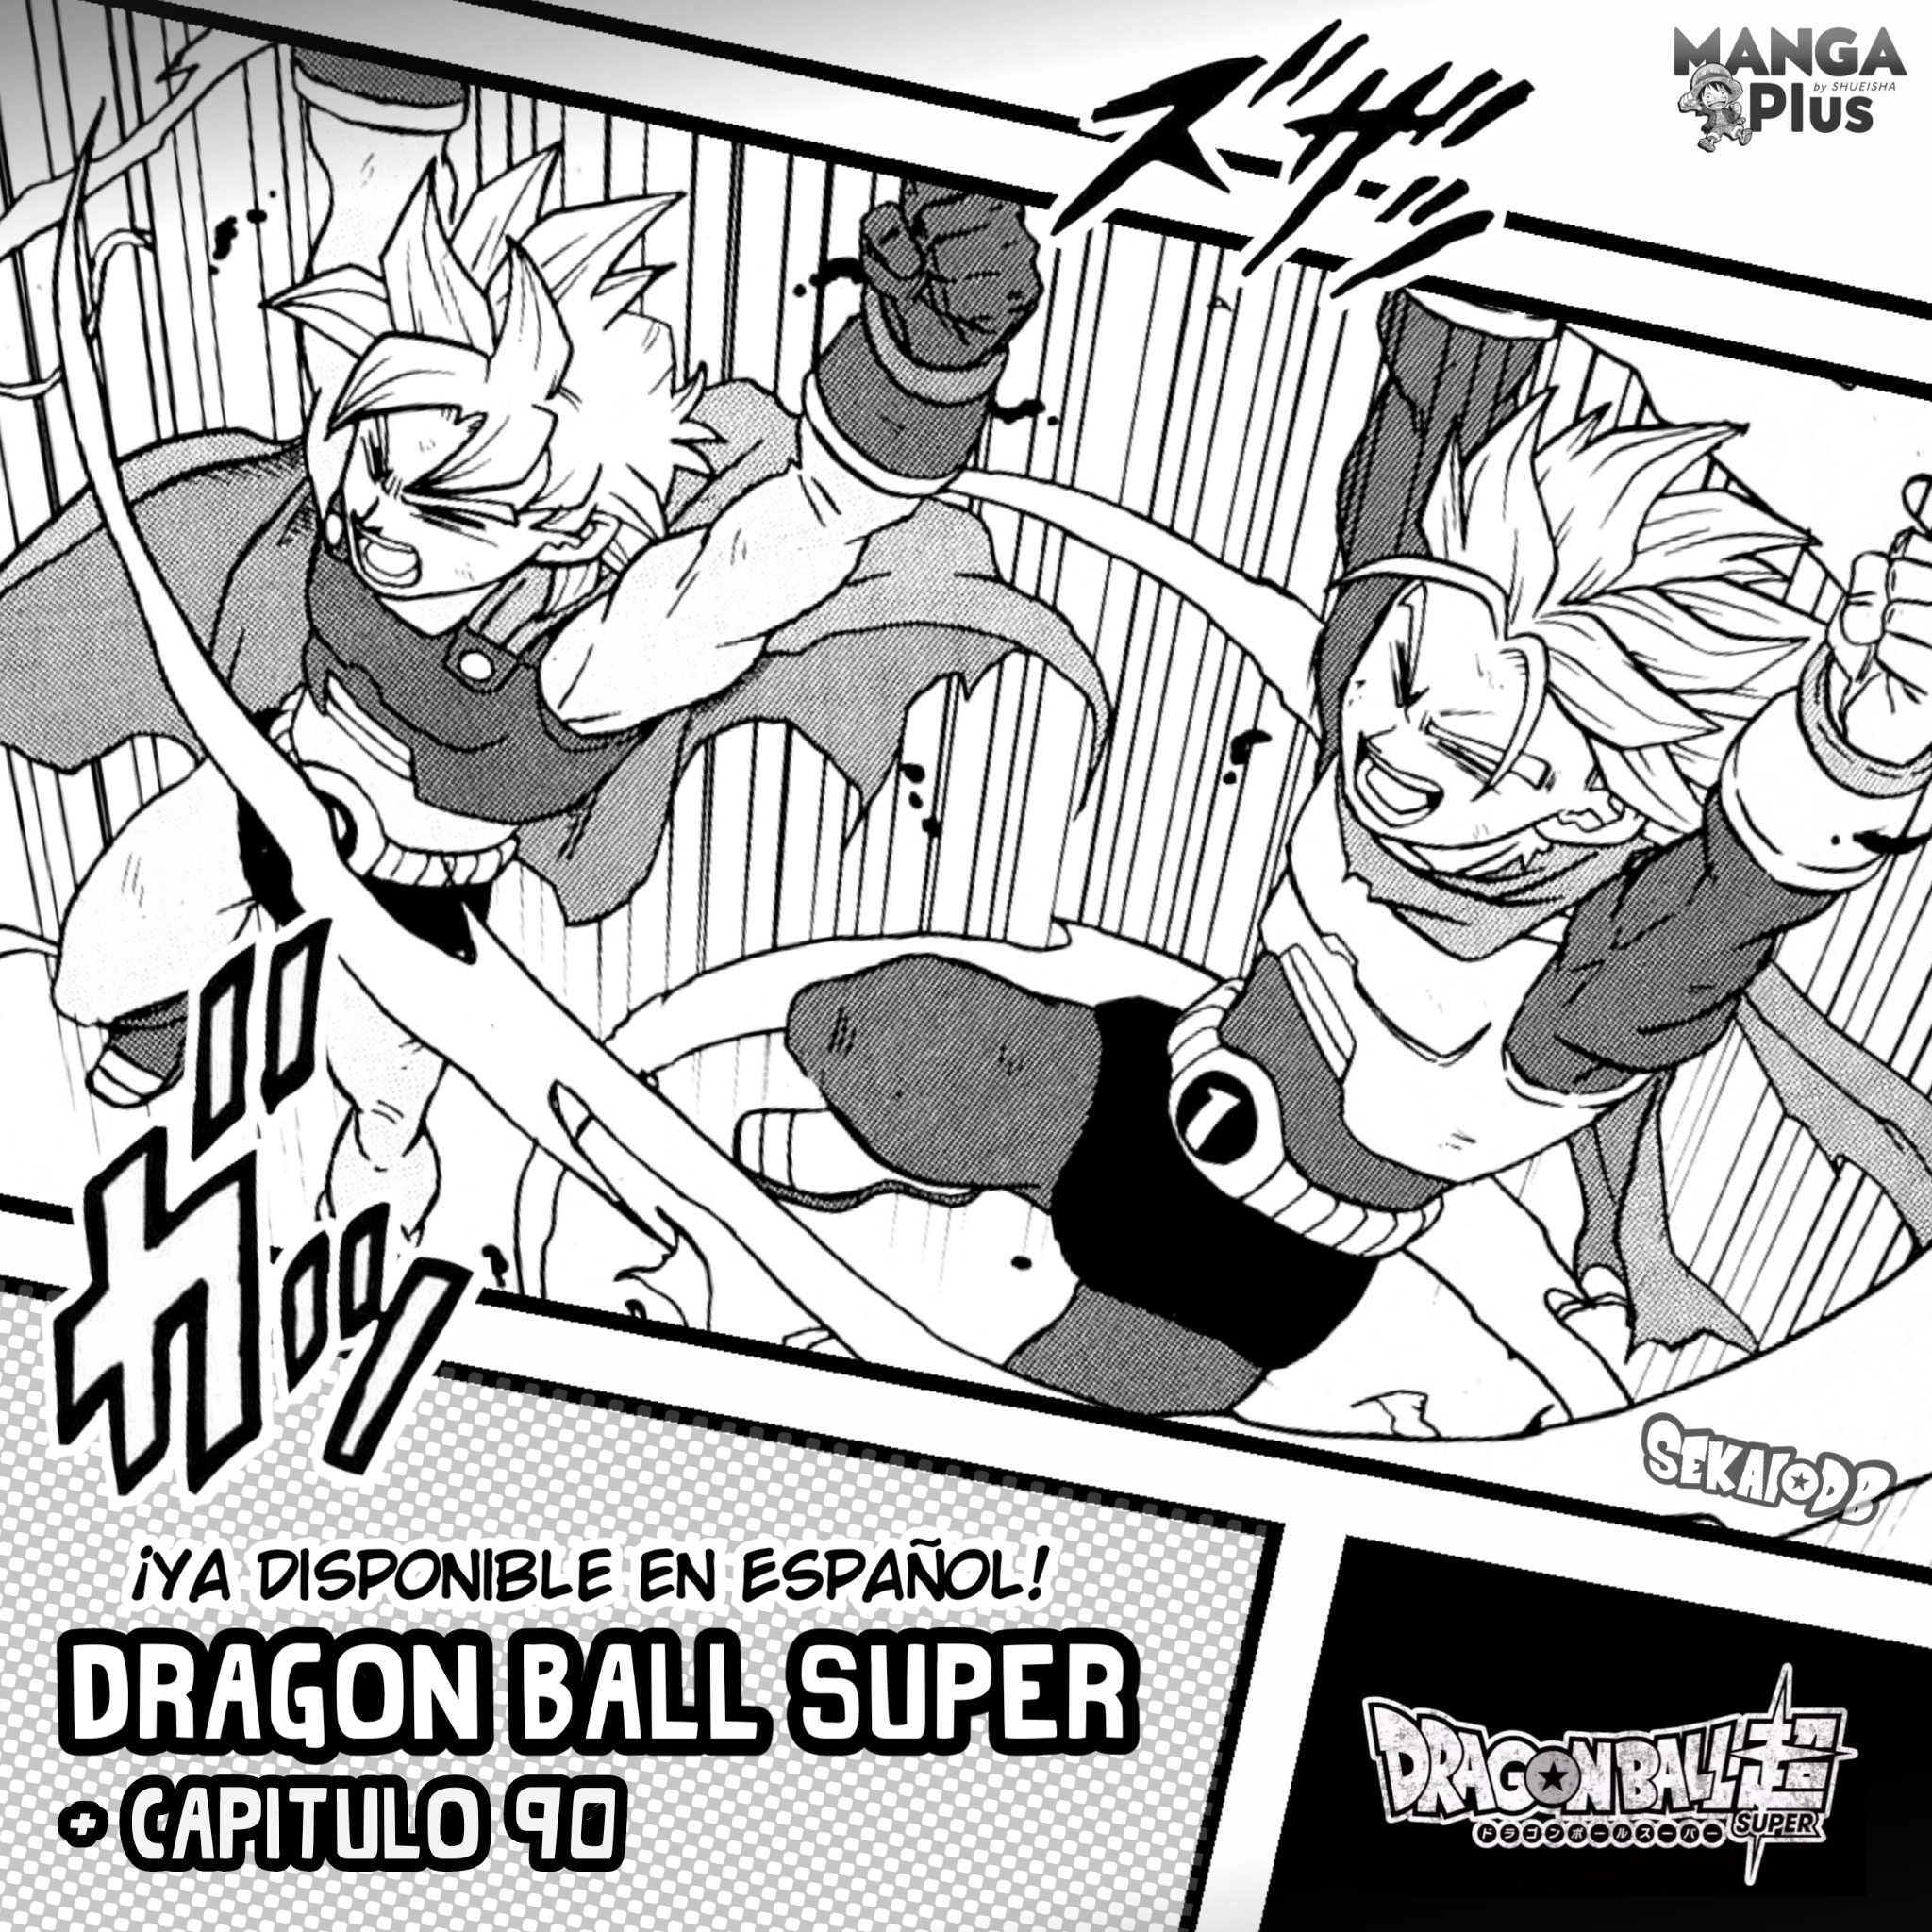 Dragon Ball Super - Capítulo 90 - Confronto com Dr. Hedo